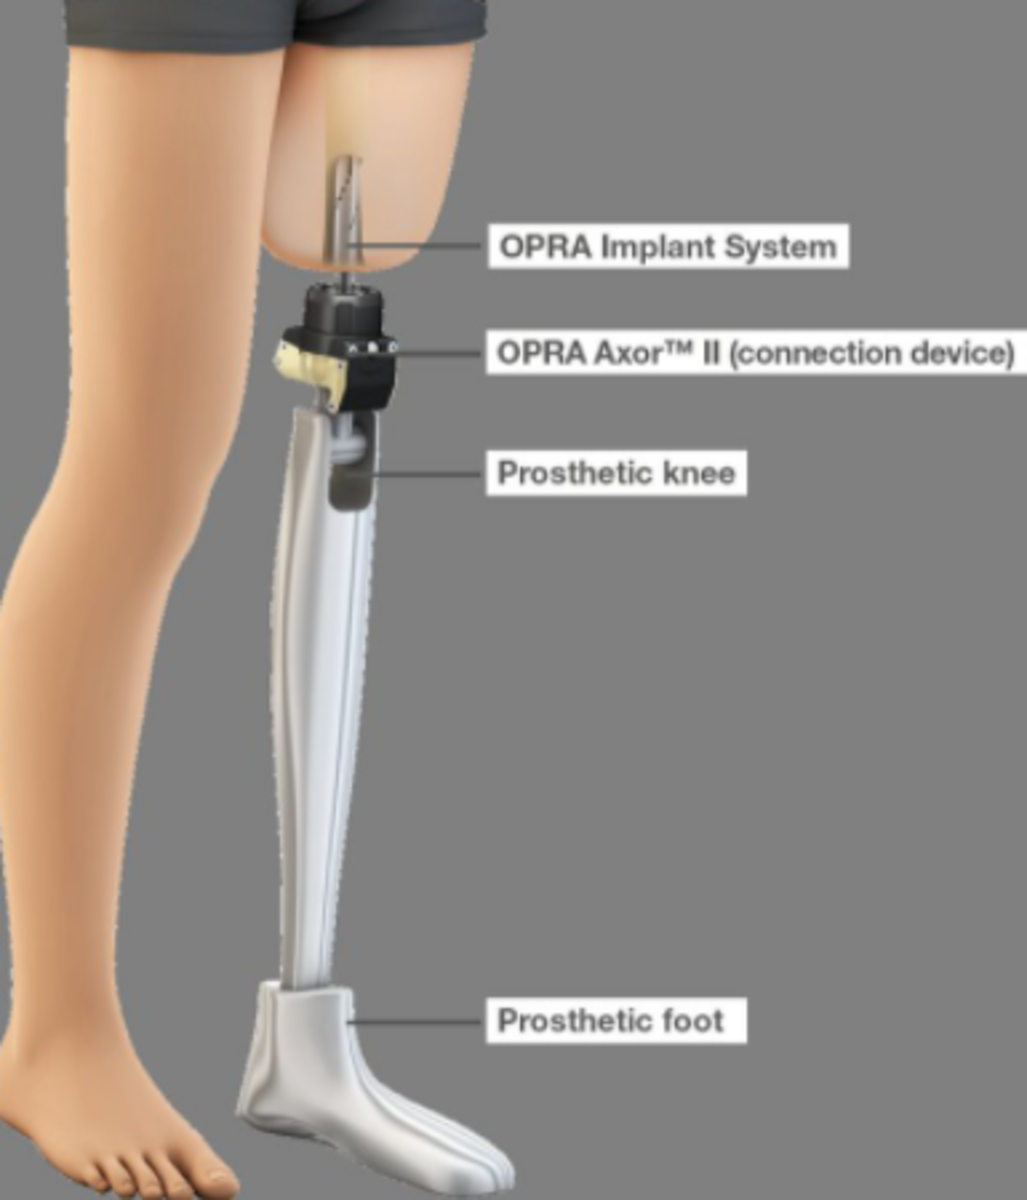 amputation-and-prosthetics